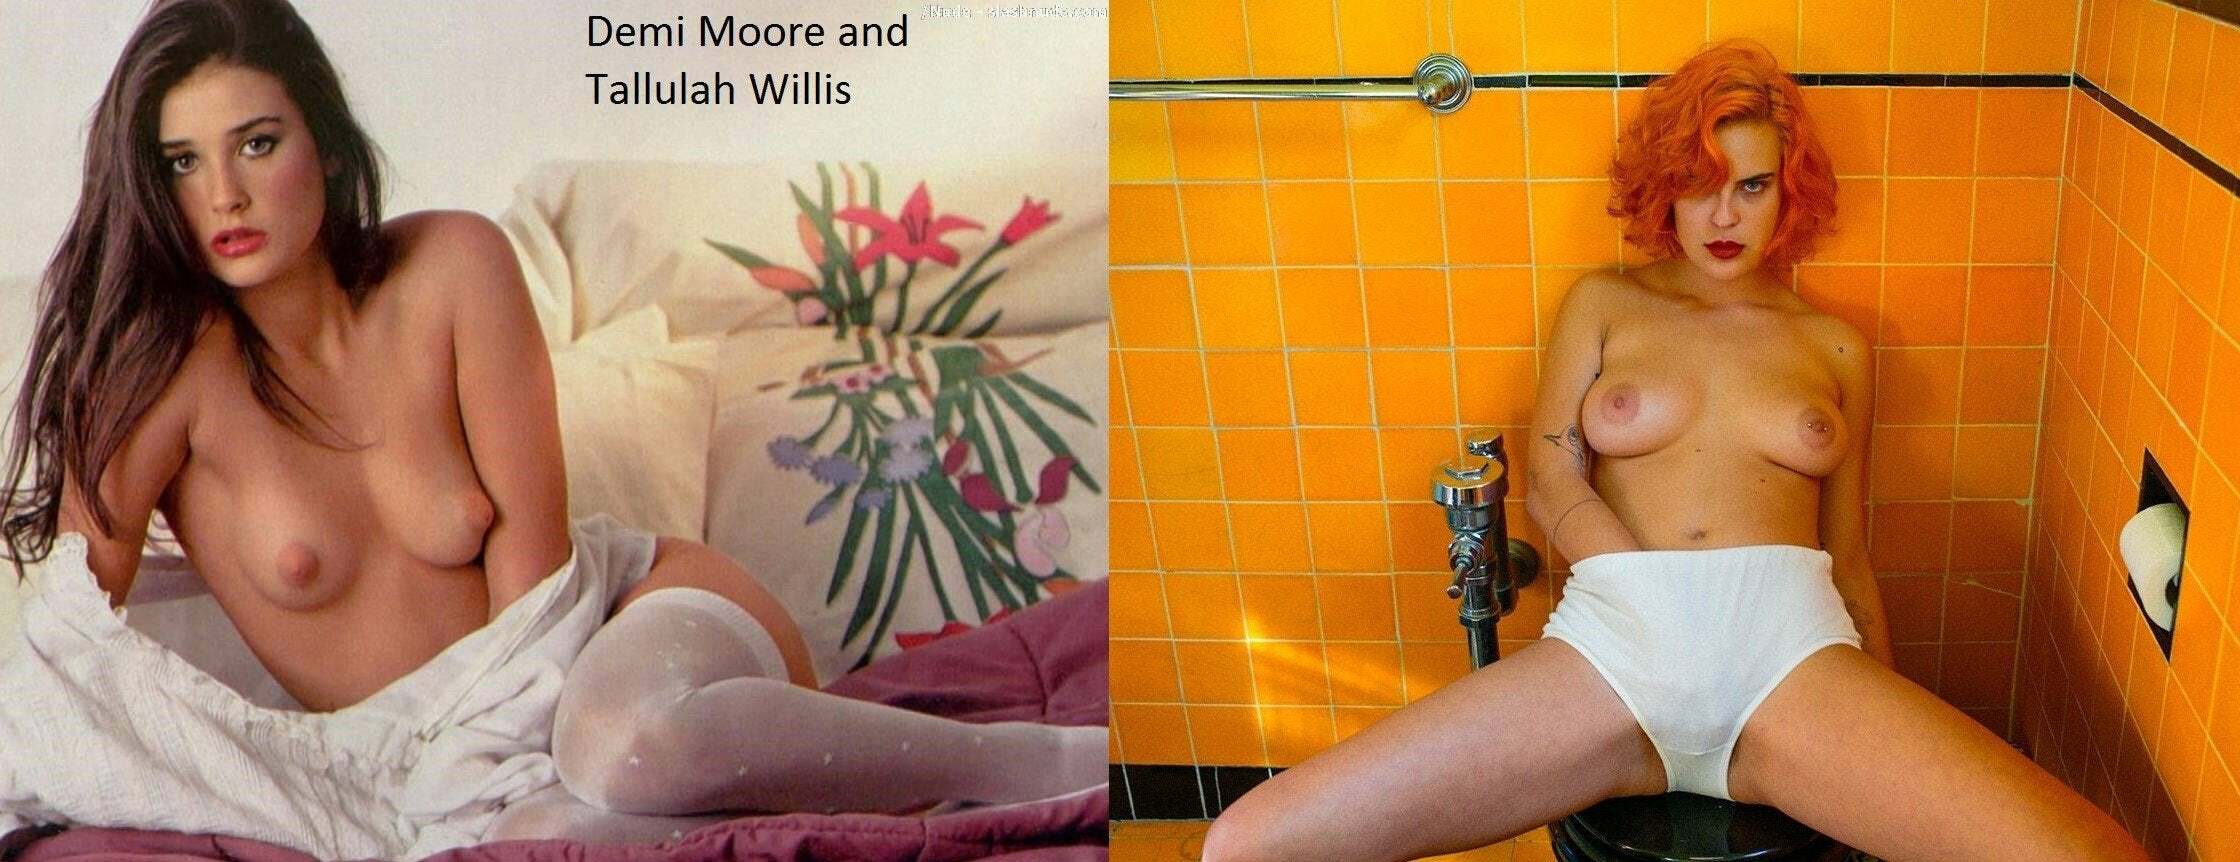 Moore nude pics demi Demi Moore